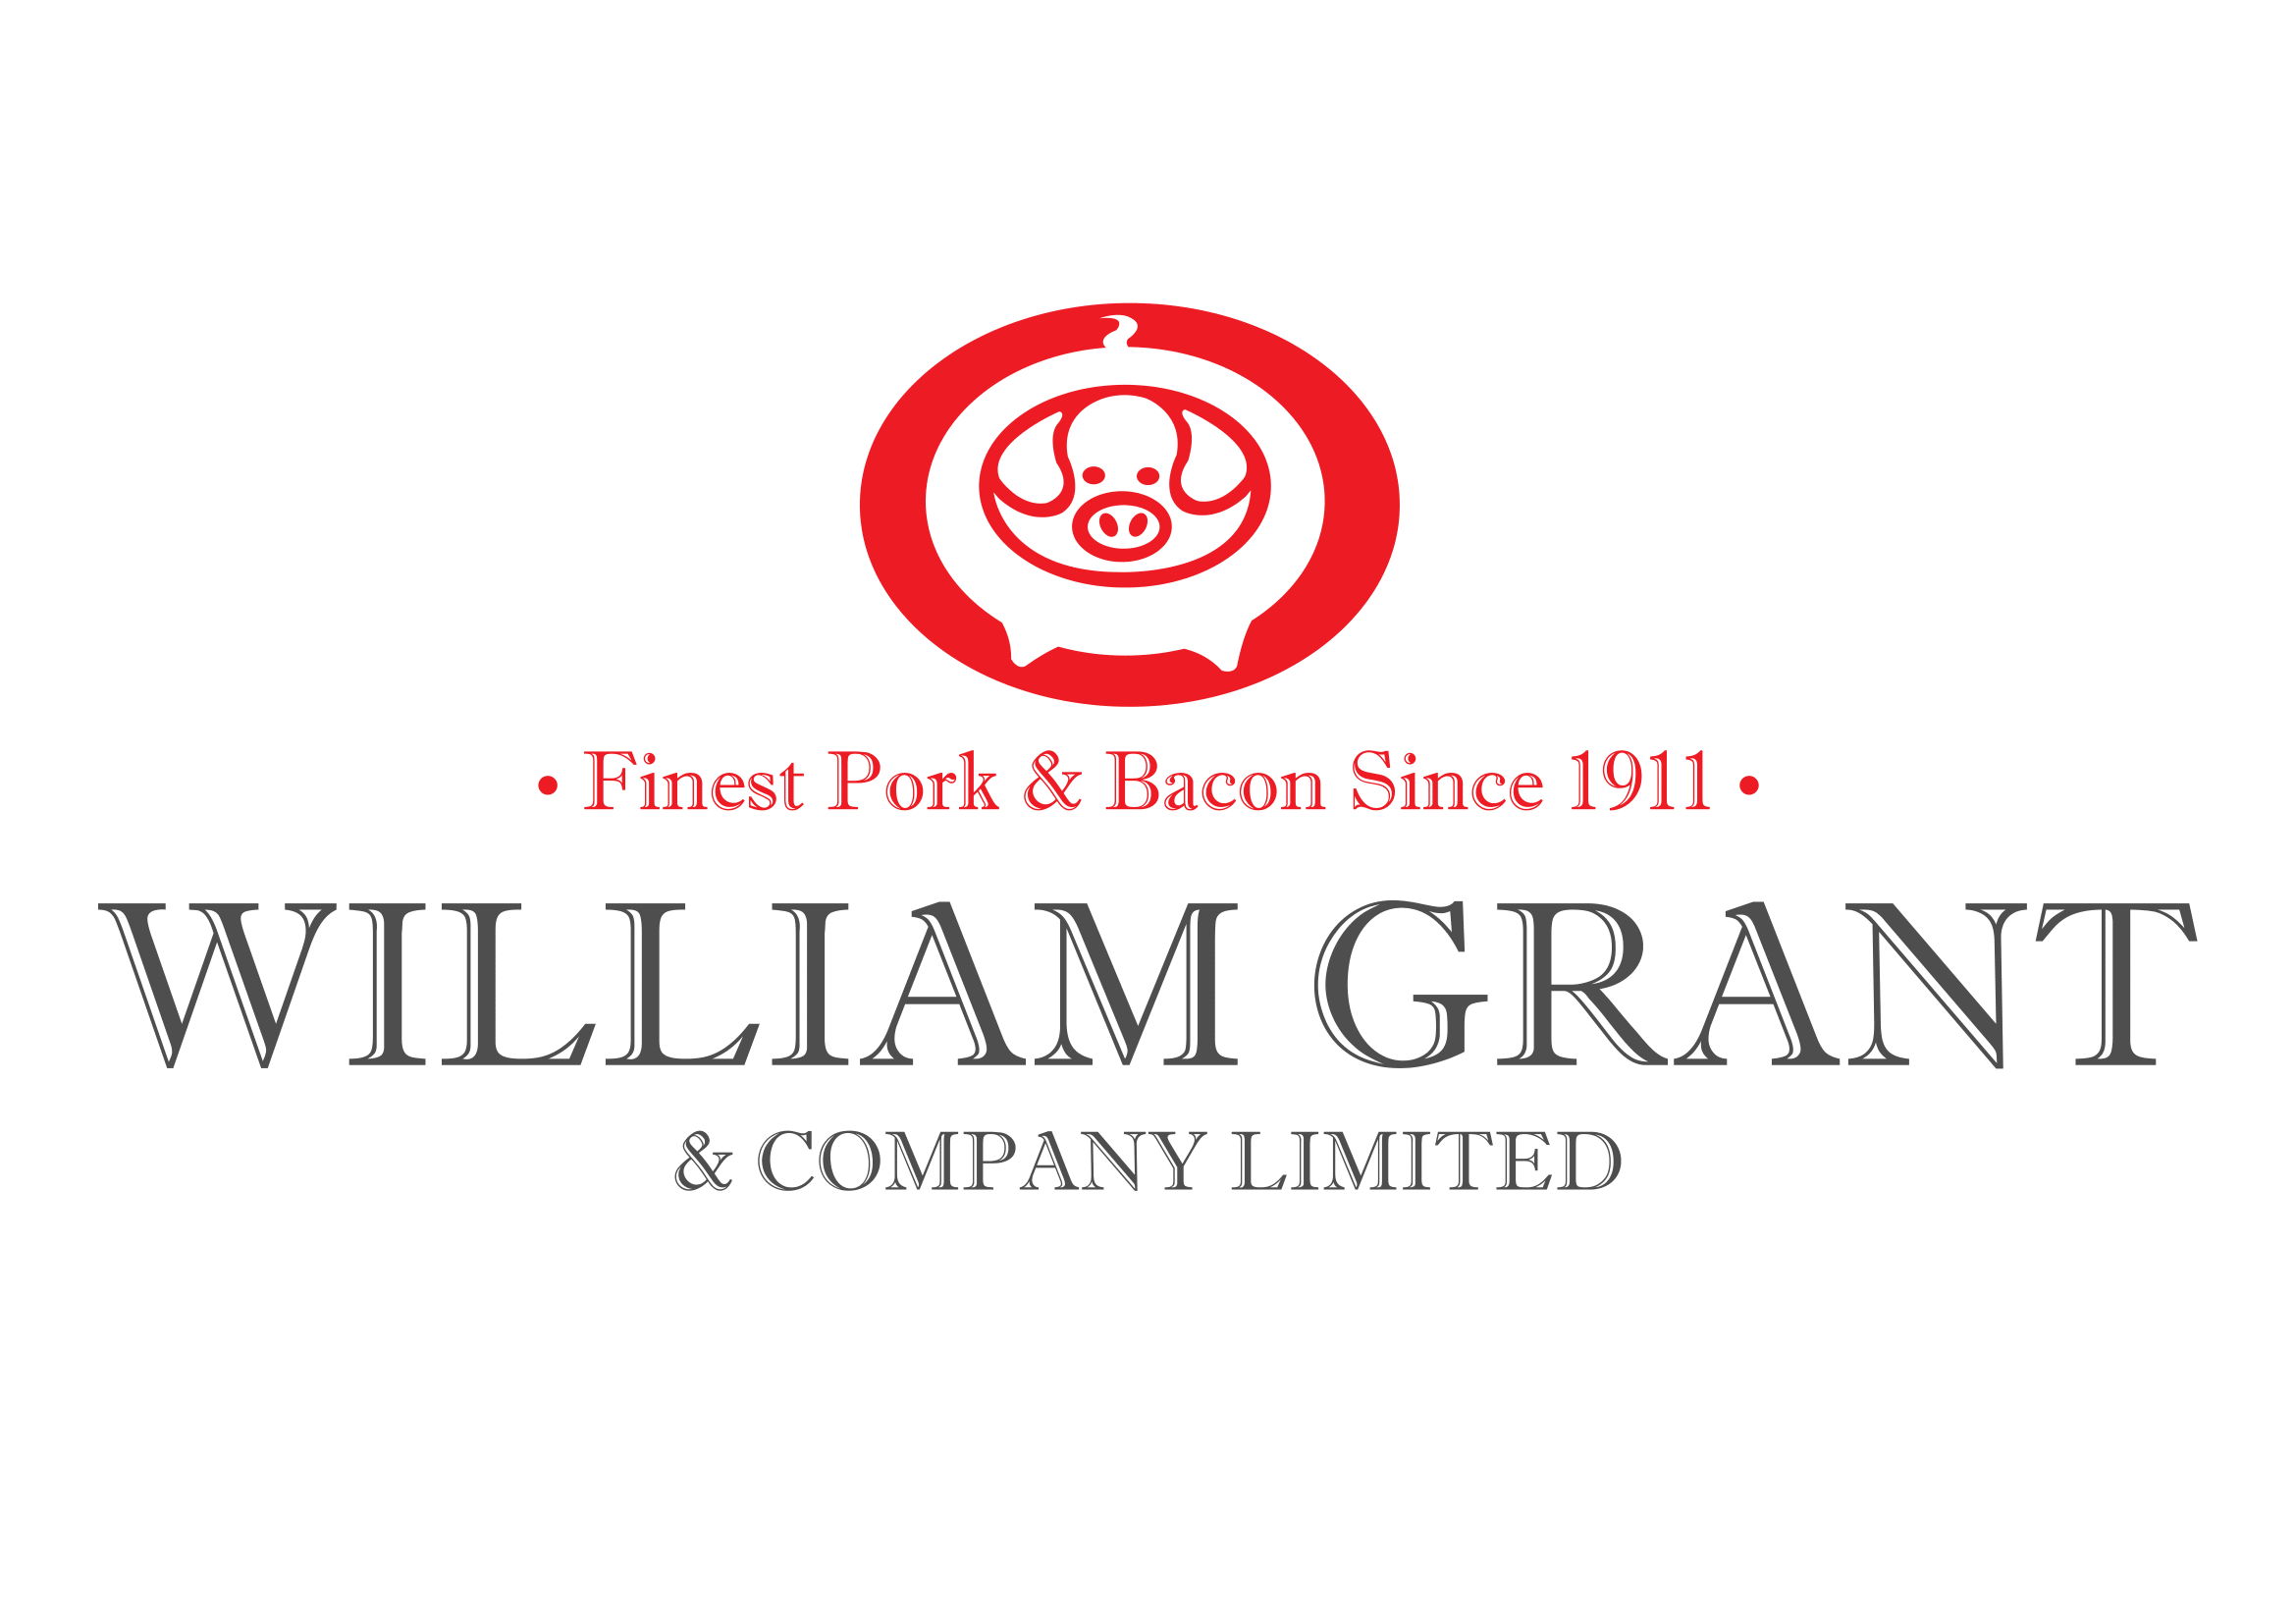 William Grant and Company